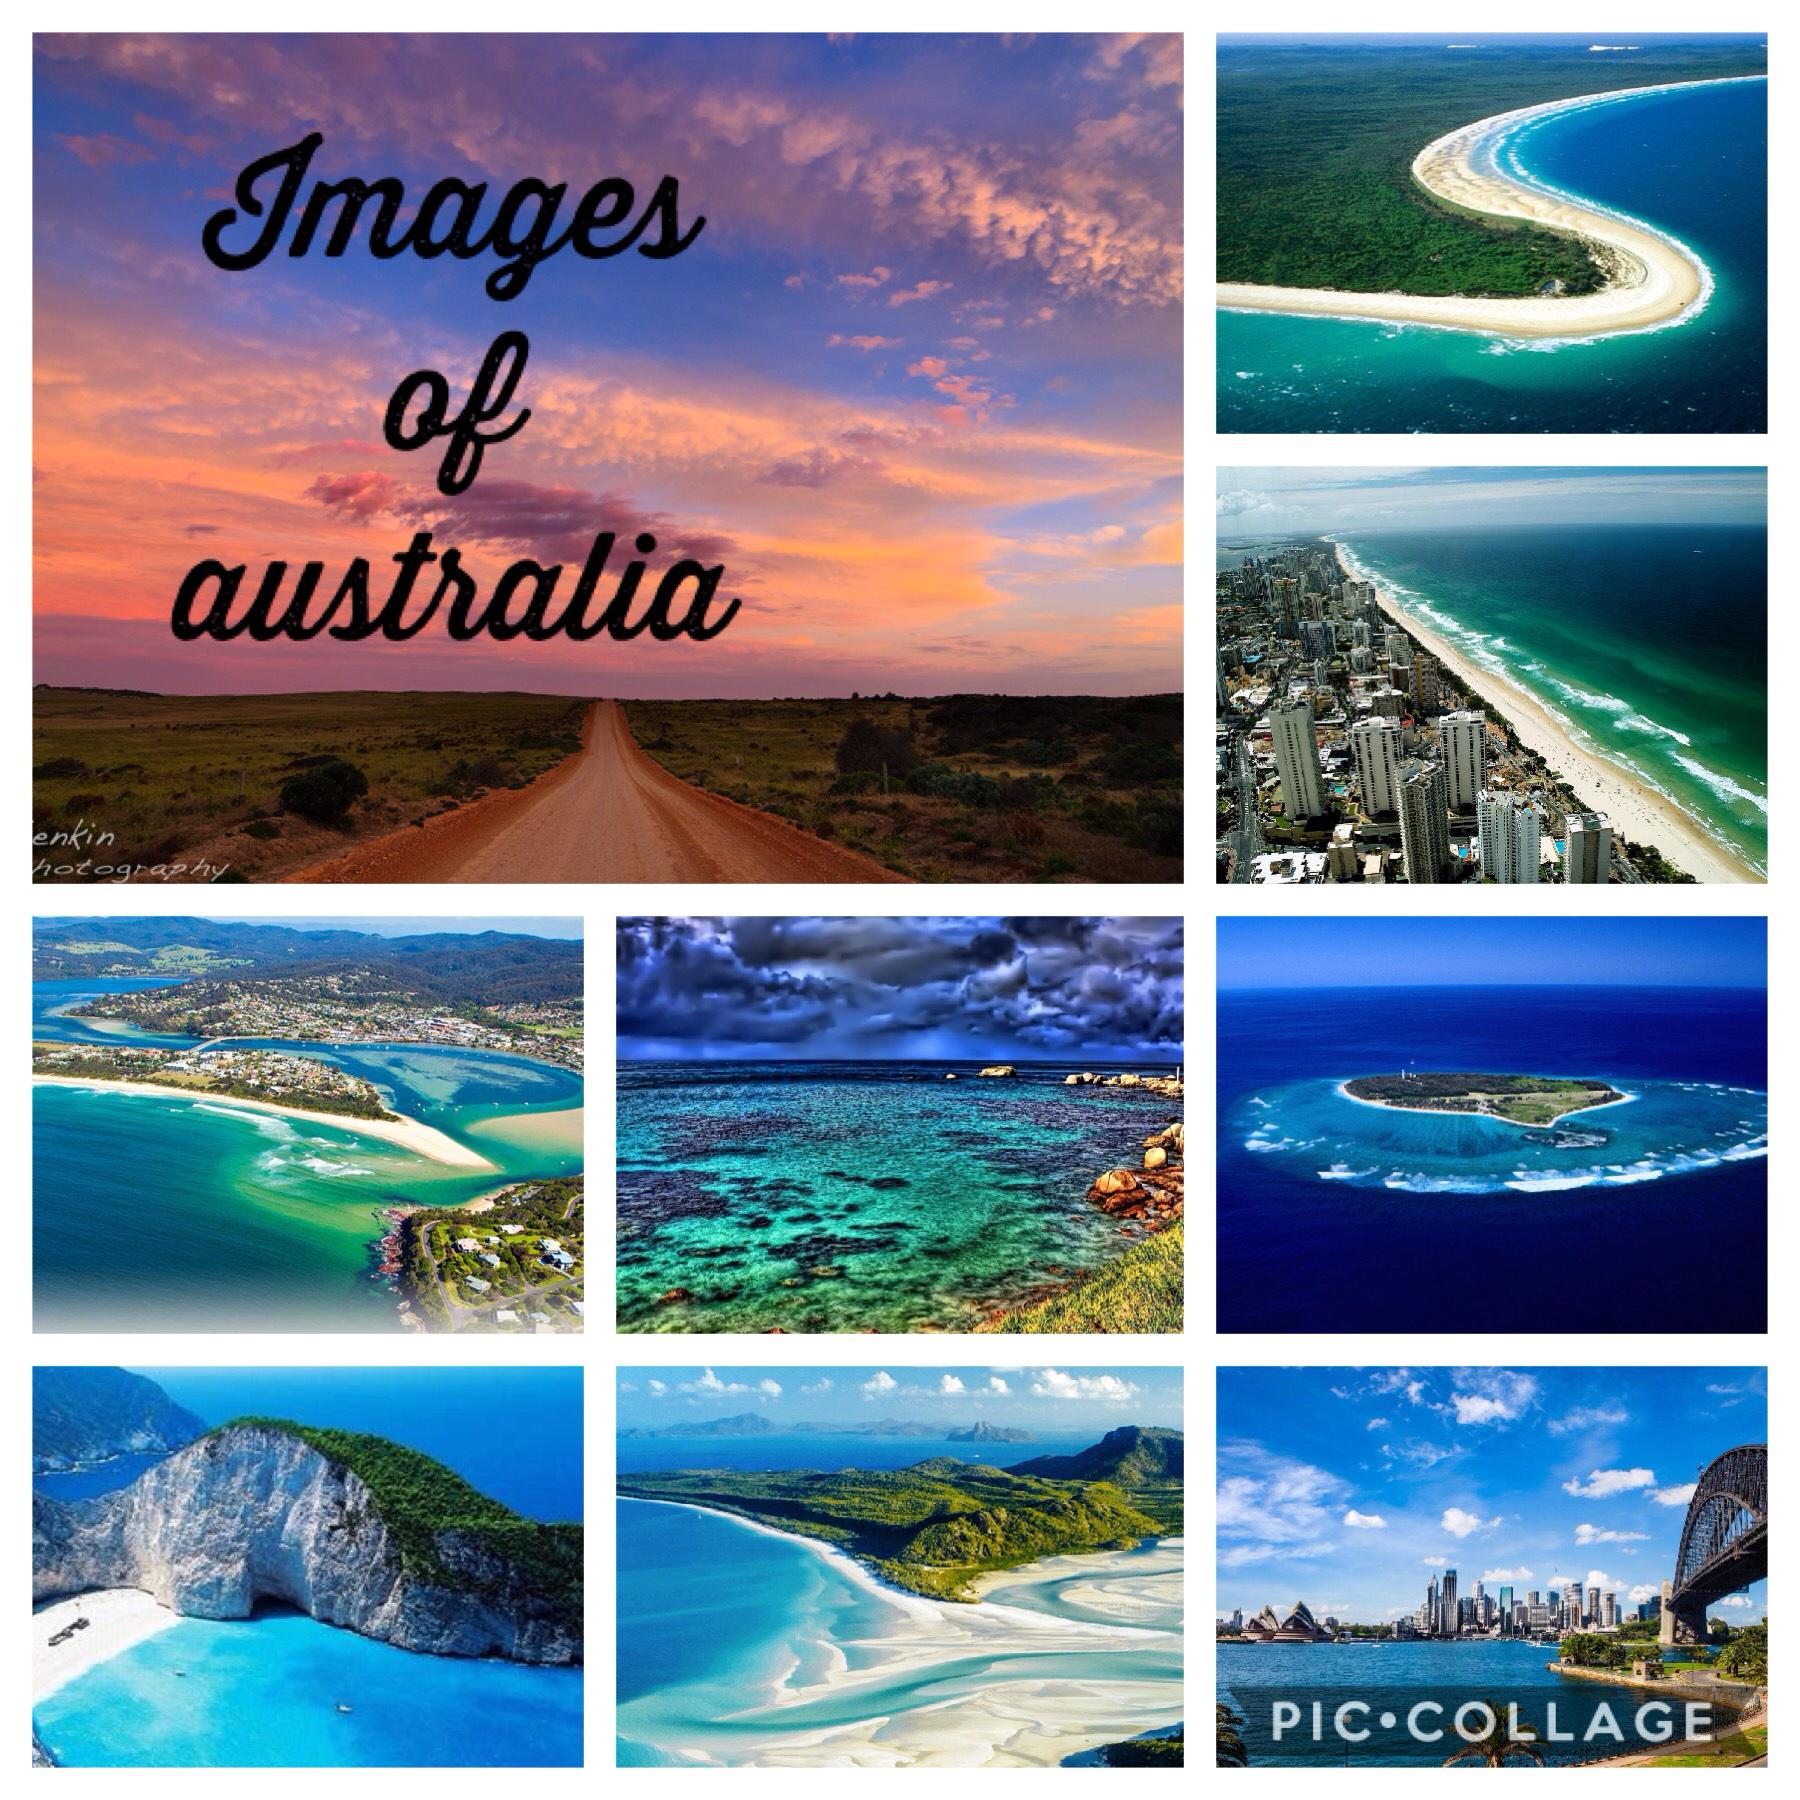 Images of Australia 